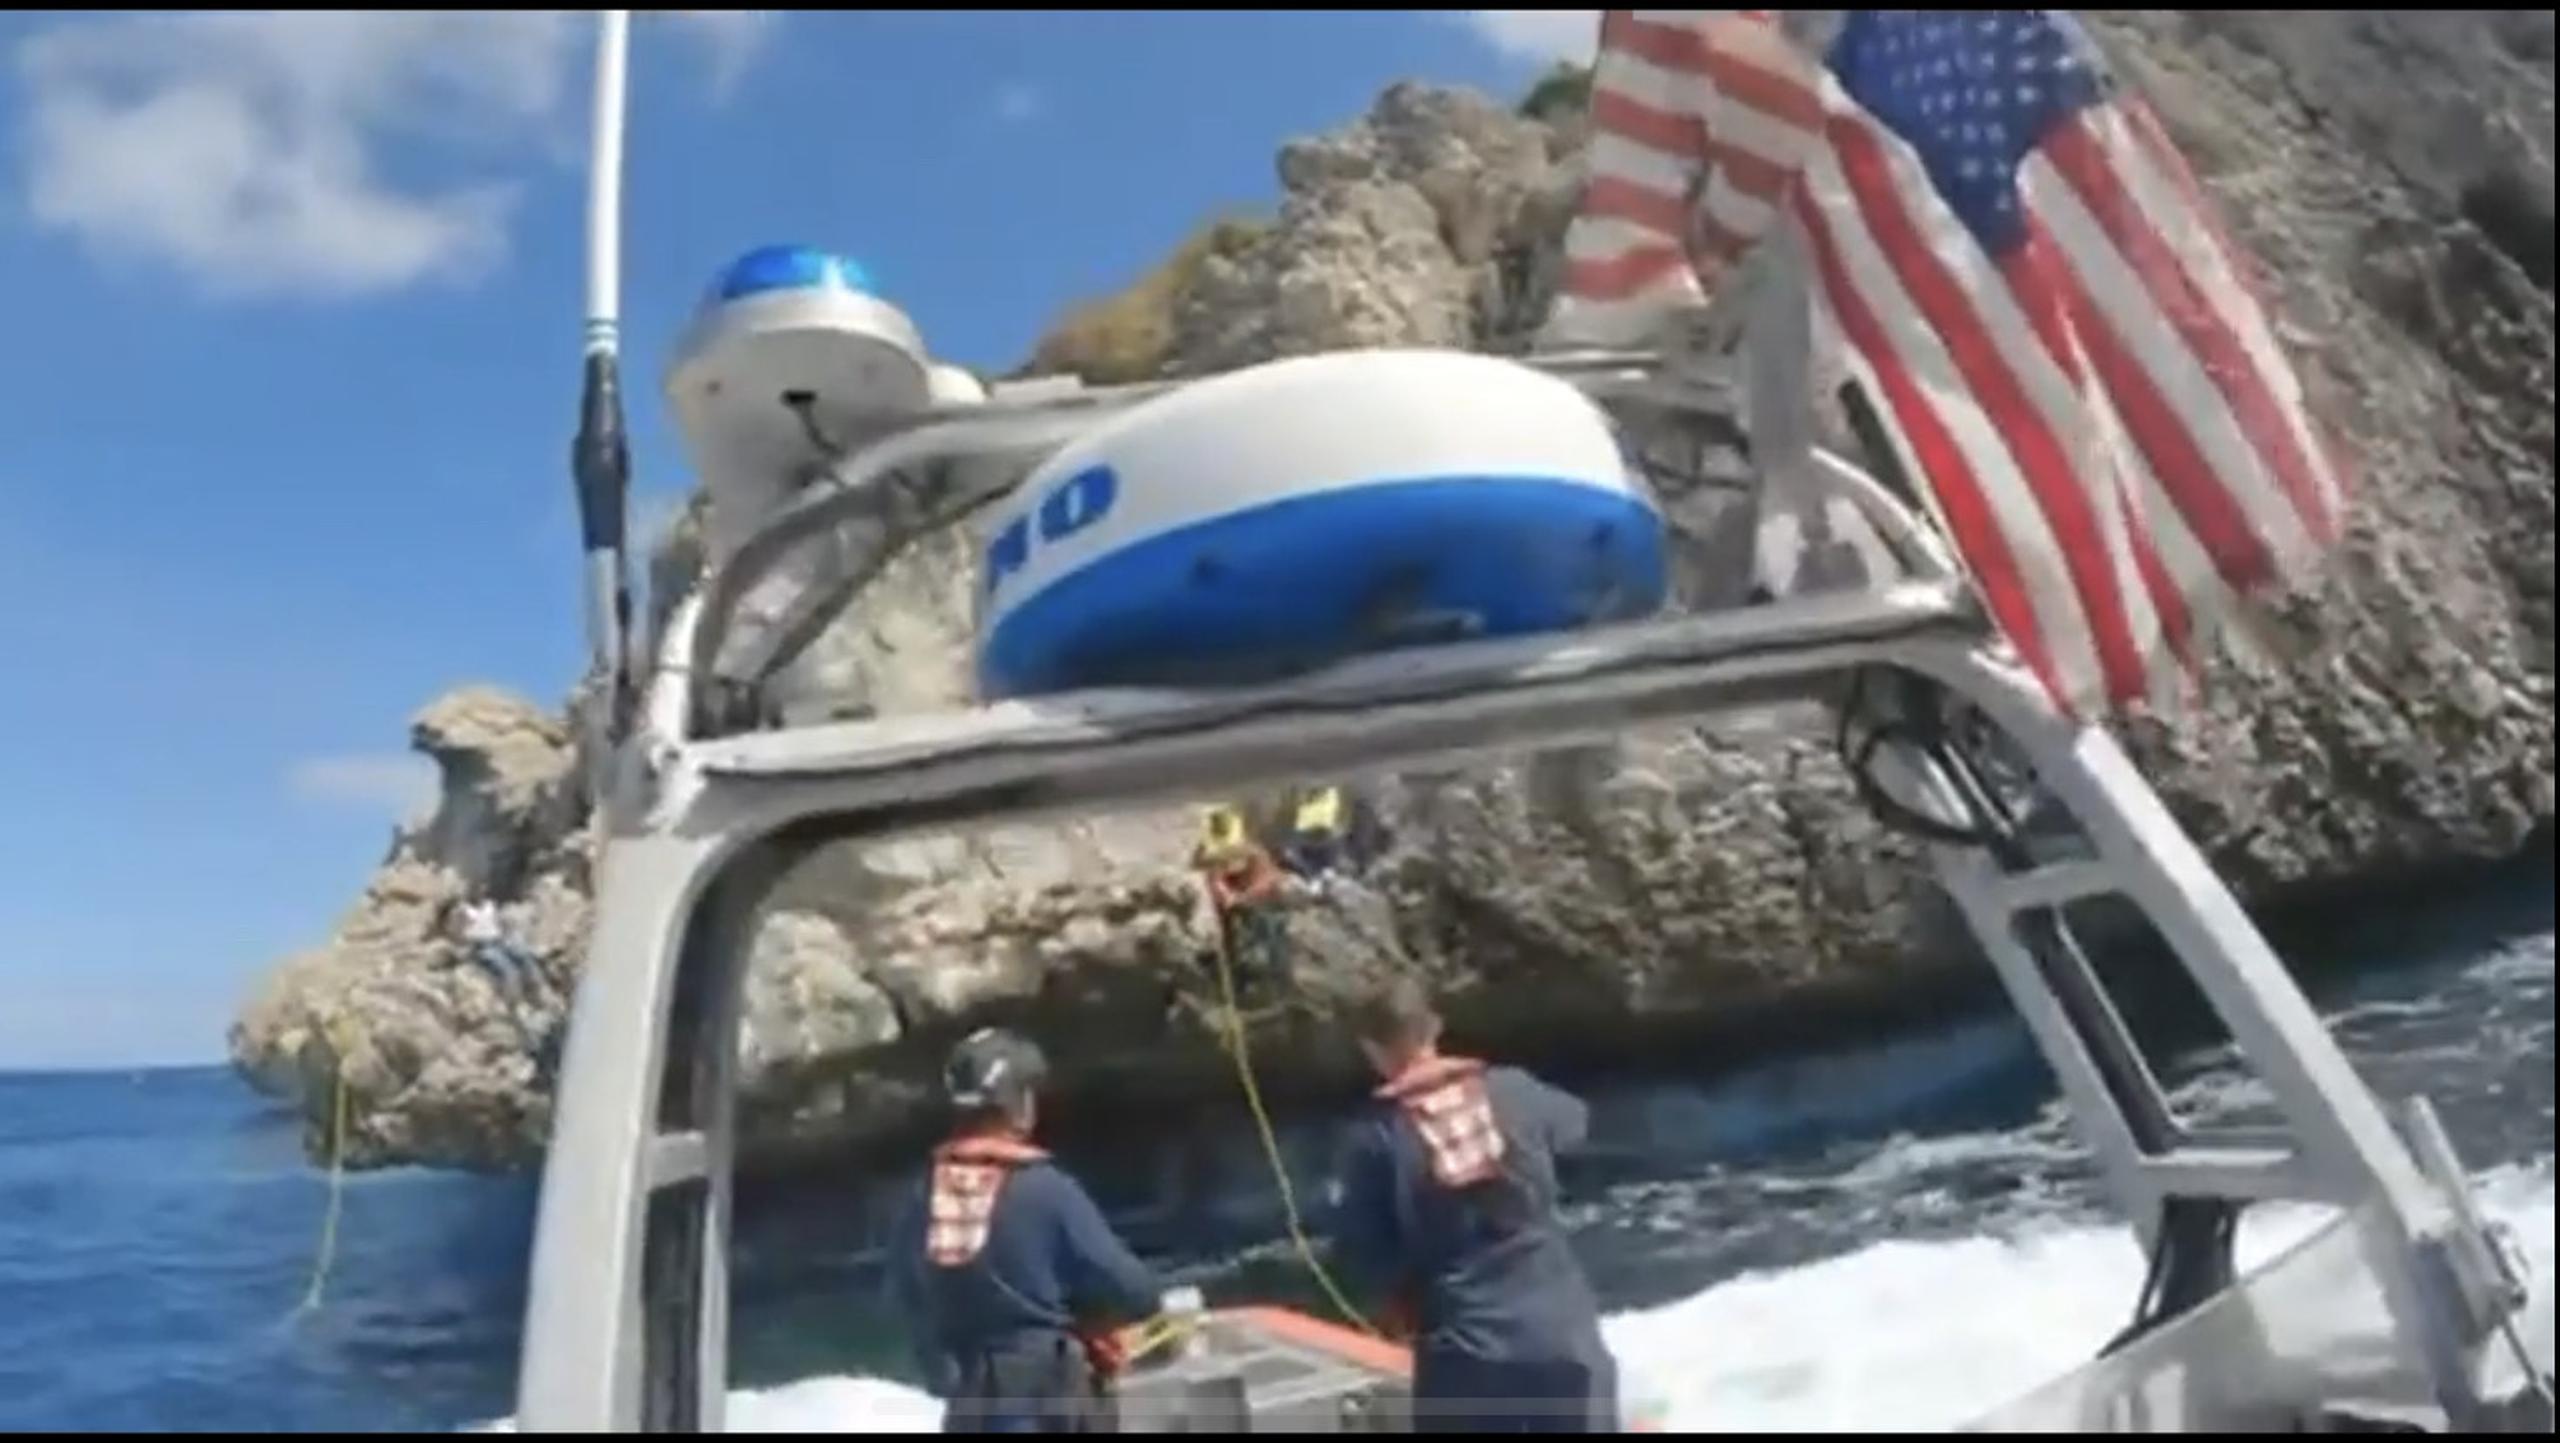 Los migrantes saltaron de uno en uno a un salvavidas que la tripulación del bote usó para recuperarlos del agua de manera segura.